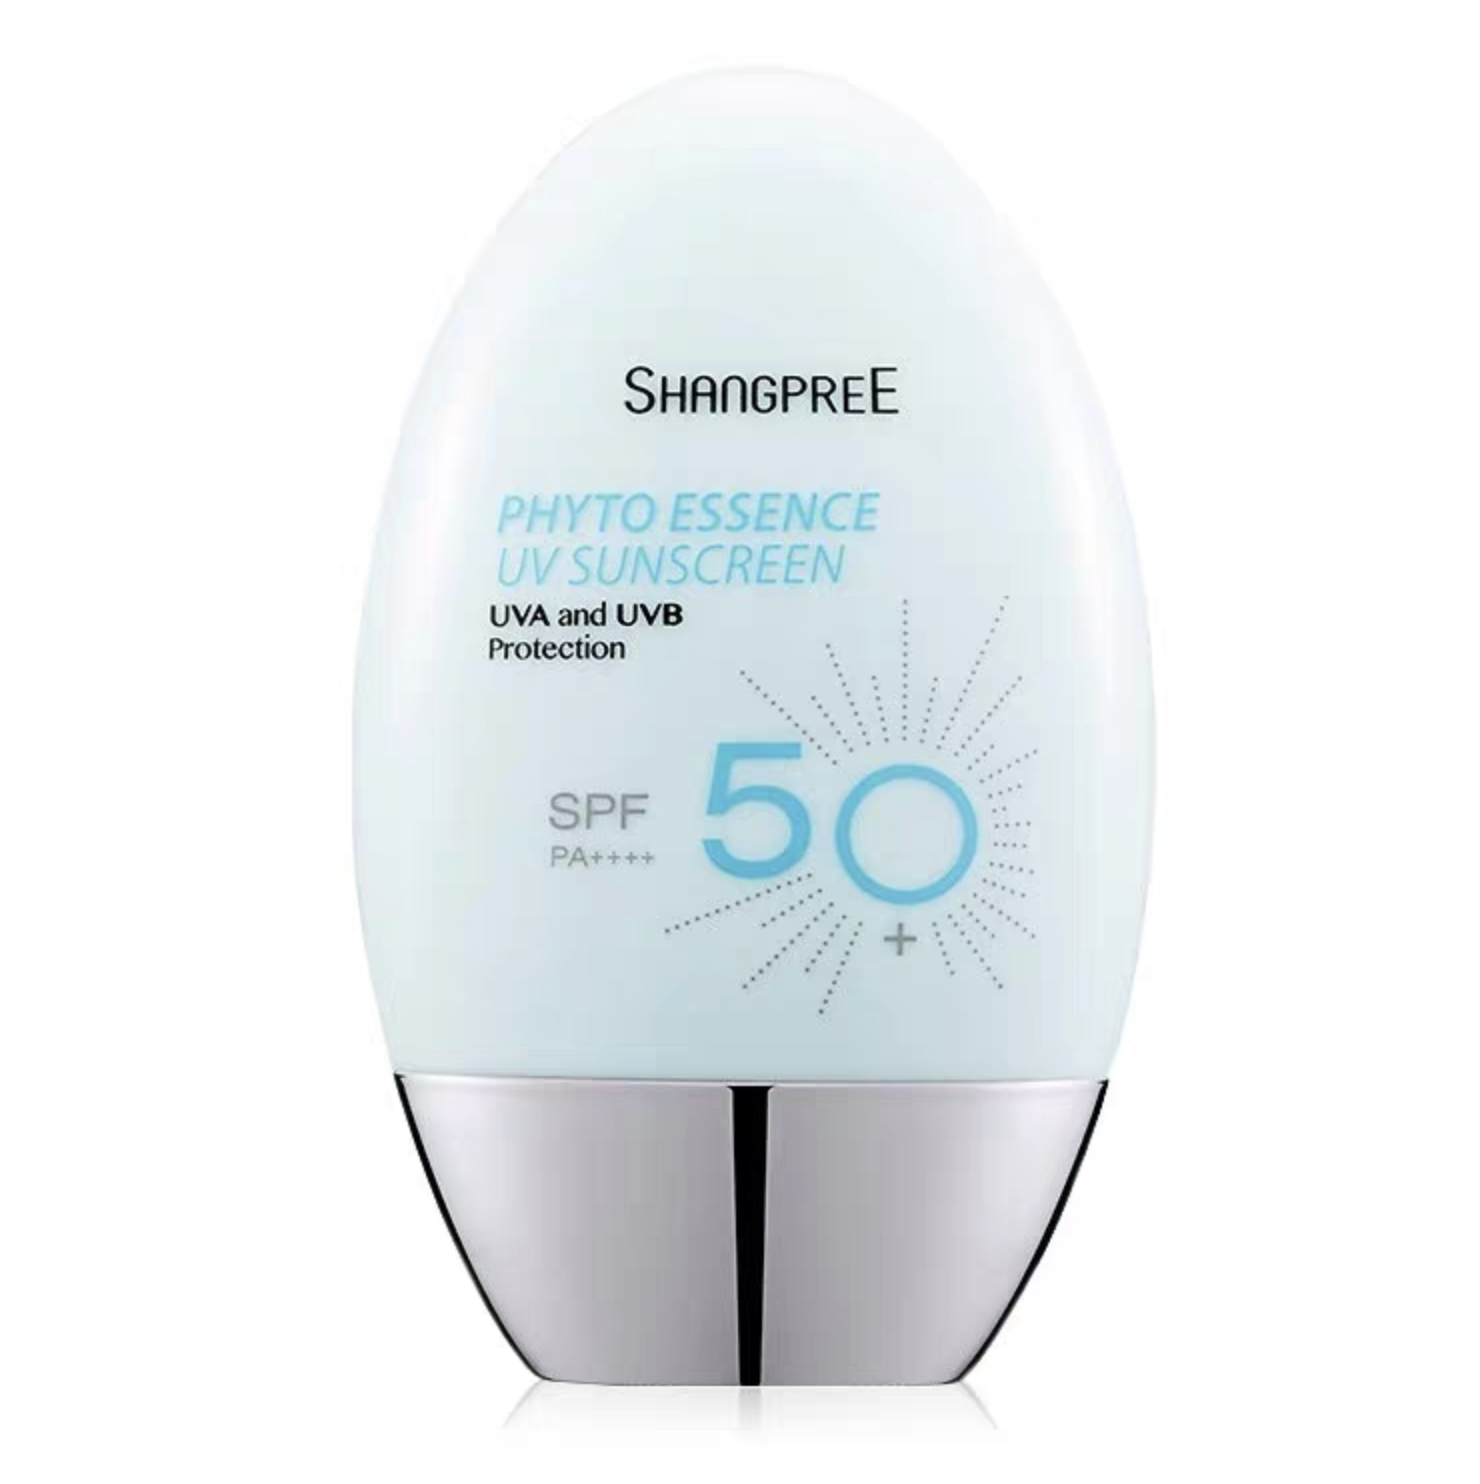 隔离防晒霜 spf50  60mlshangpree(香蒲丽)是源自韩国的化妆品品牌